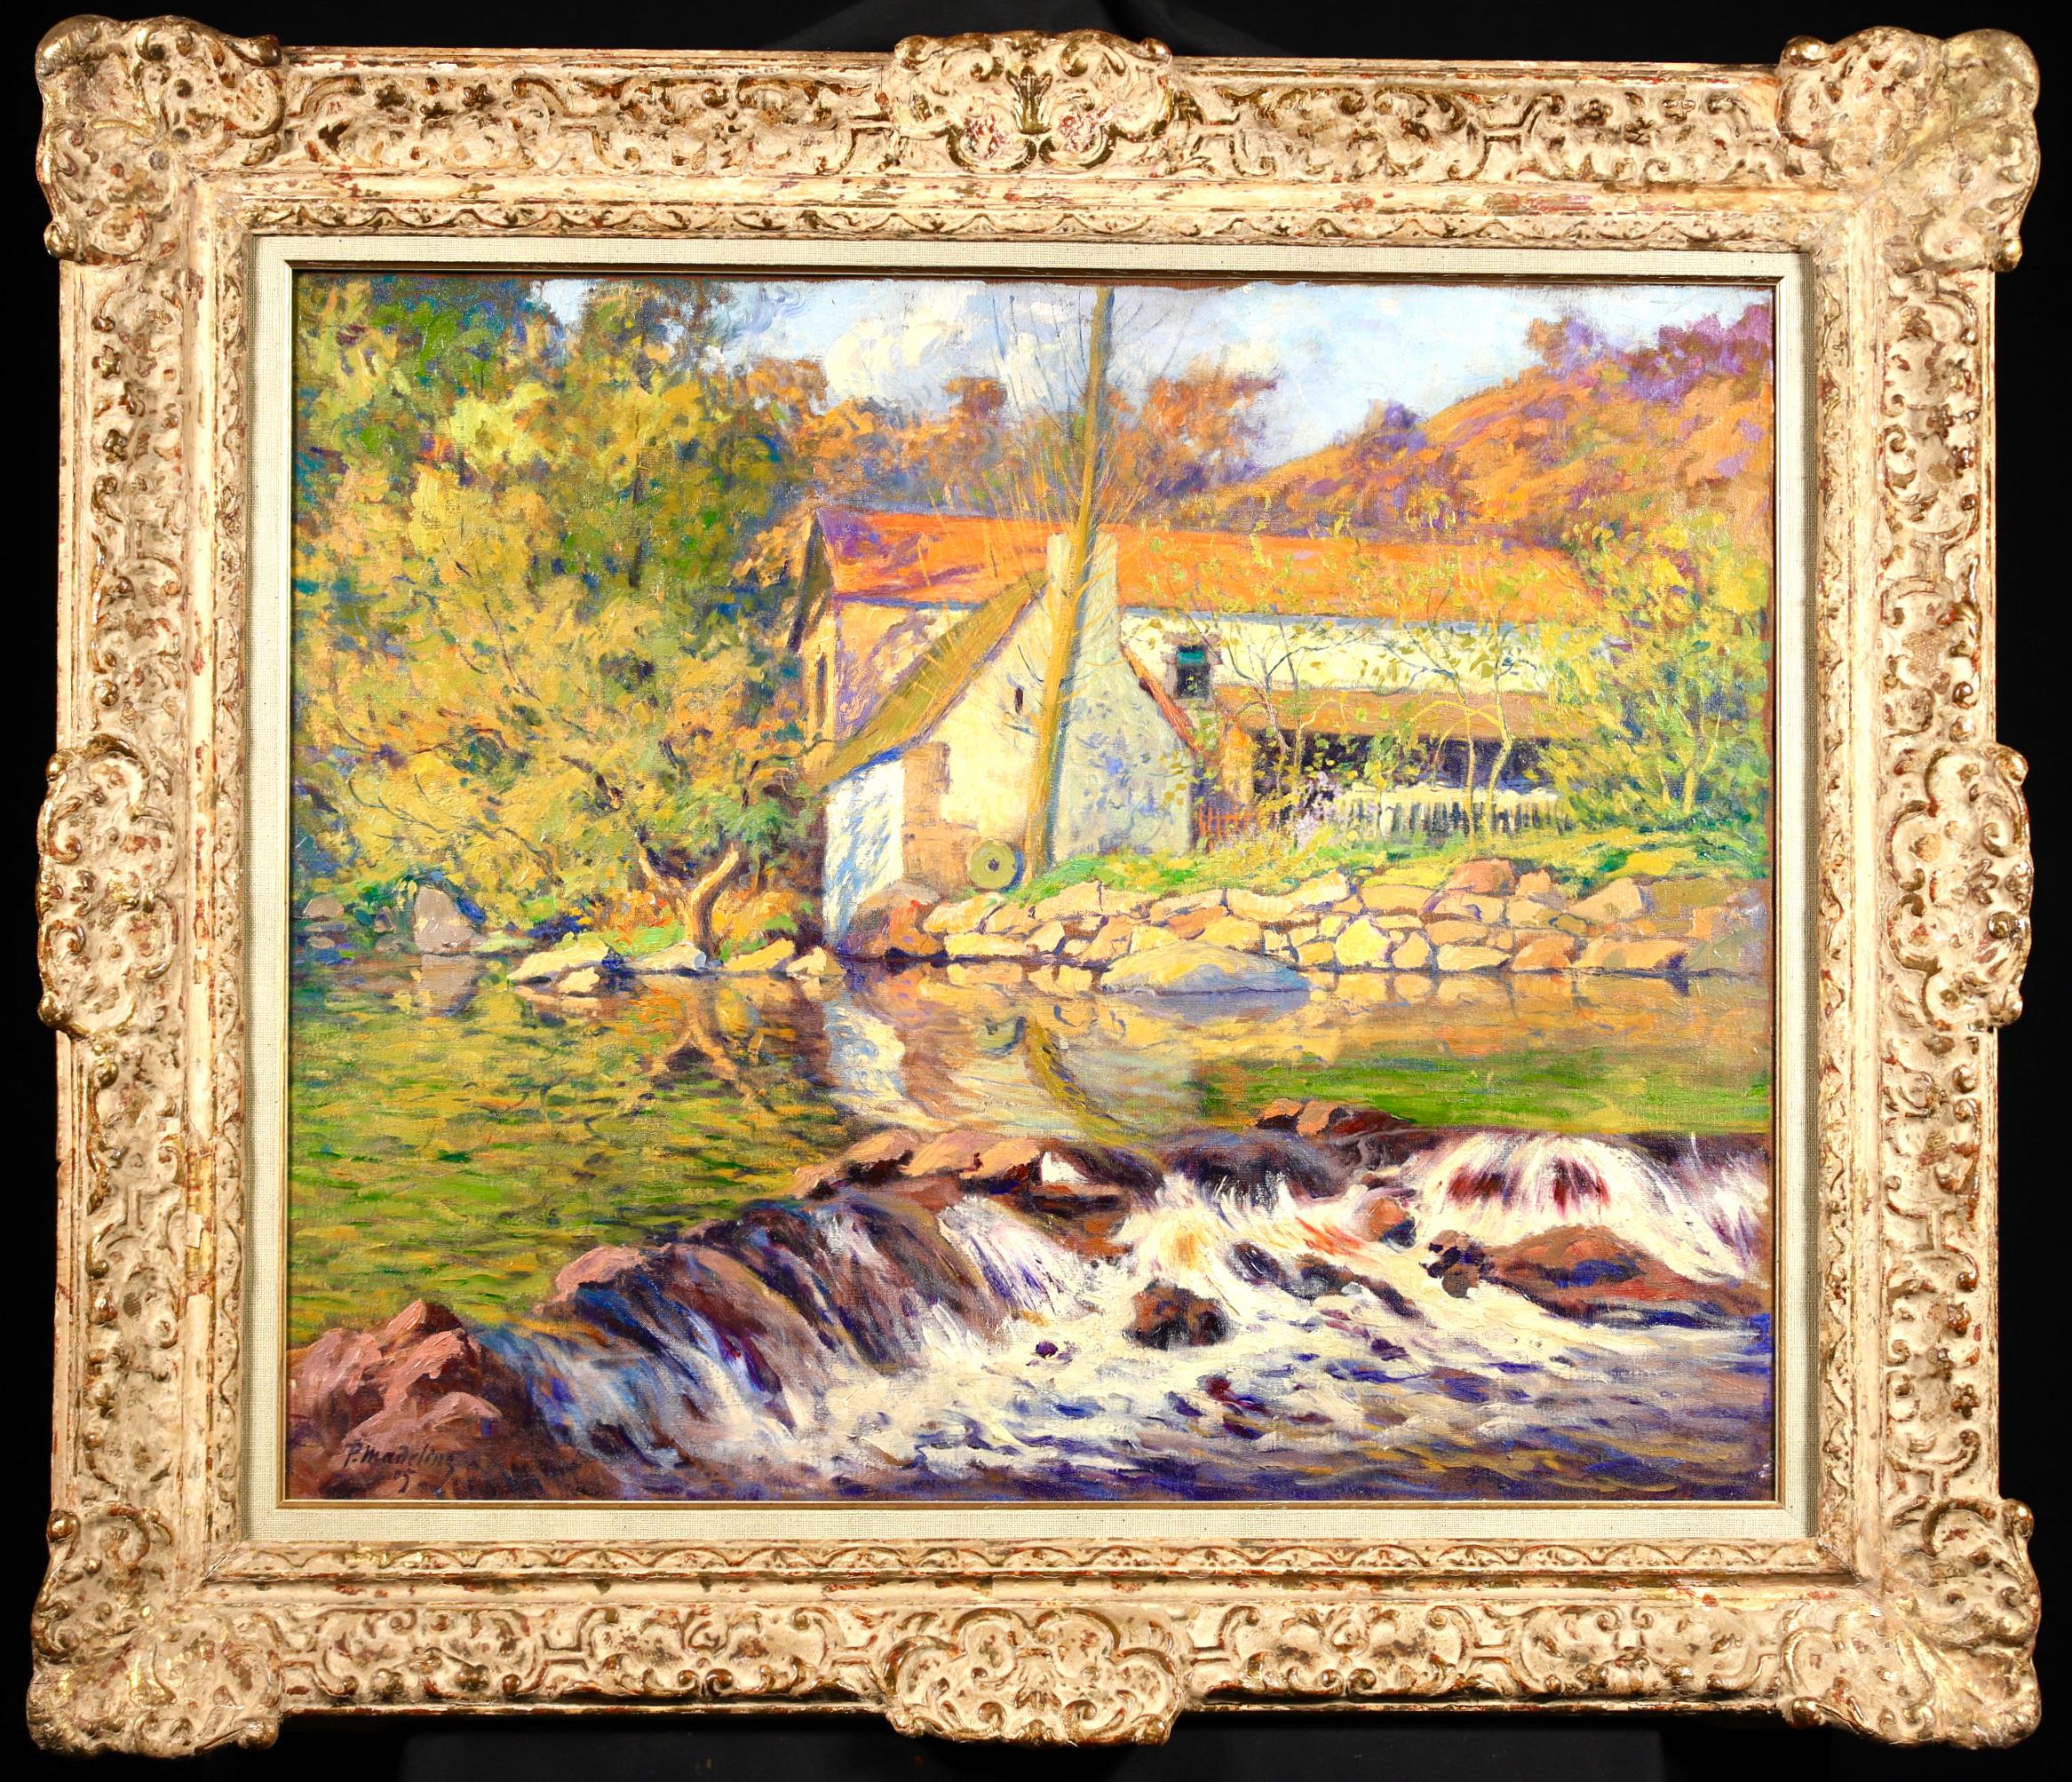 Huile sur toile originale signée et datée du peintre post impressionniste français Paul Madeline. Cette belle œuvre représente un moulin au bord d'une rivière - l'eau cascadant sur les rochers au premier plan et les arbres d'automne au loin, avec un